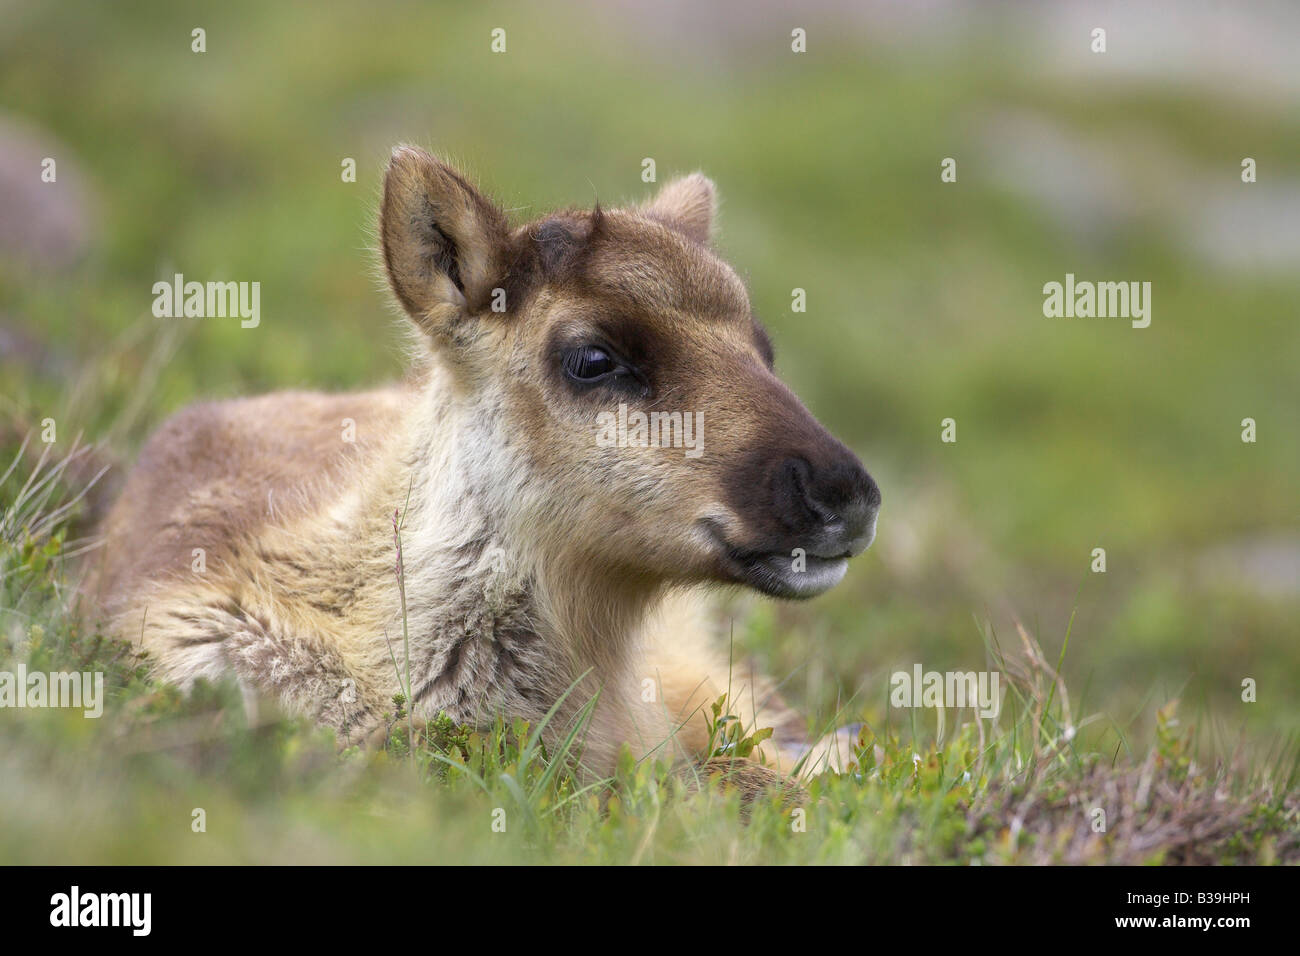 Le renne (Rangifer tarandus), veau couché dans la prairie Banque D'Images